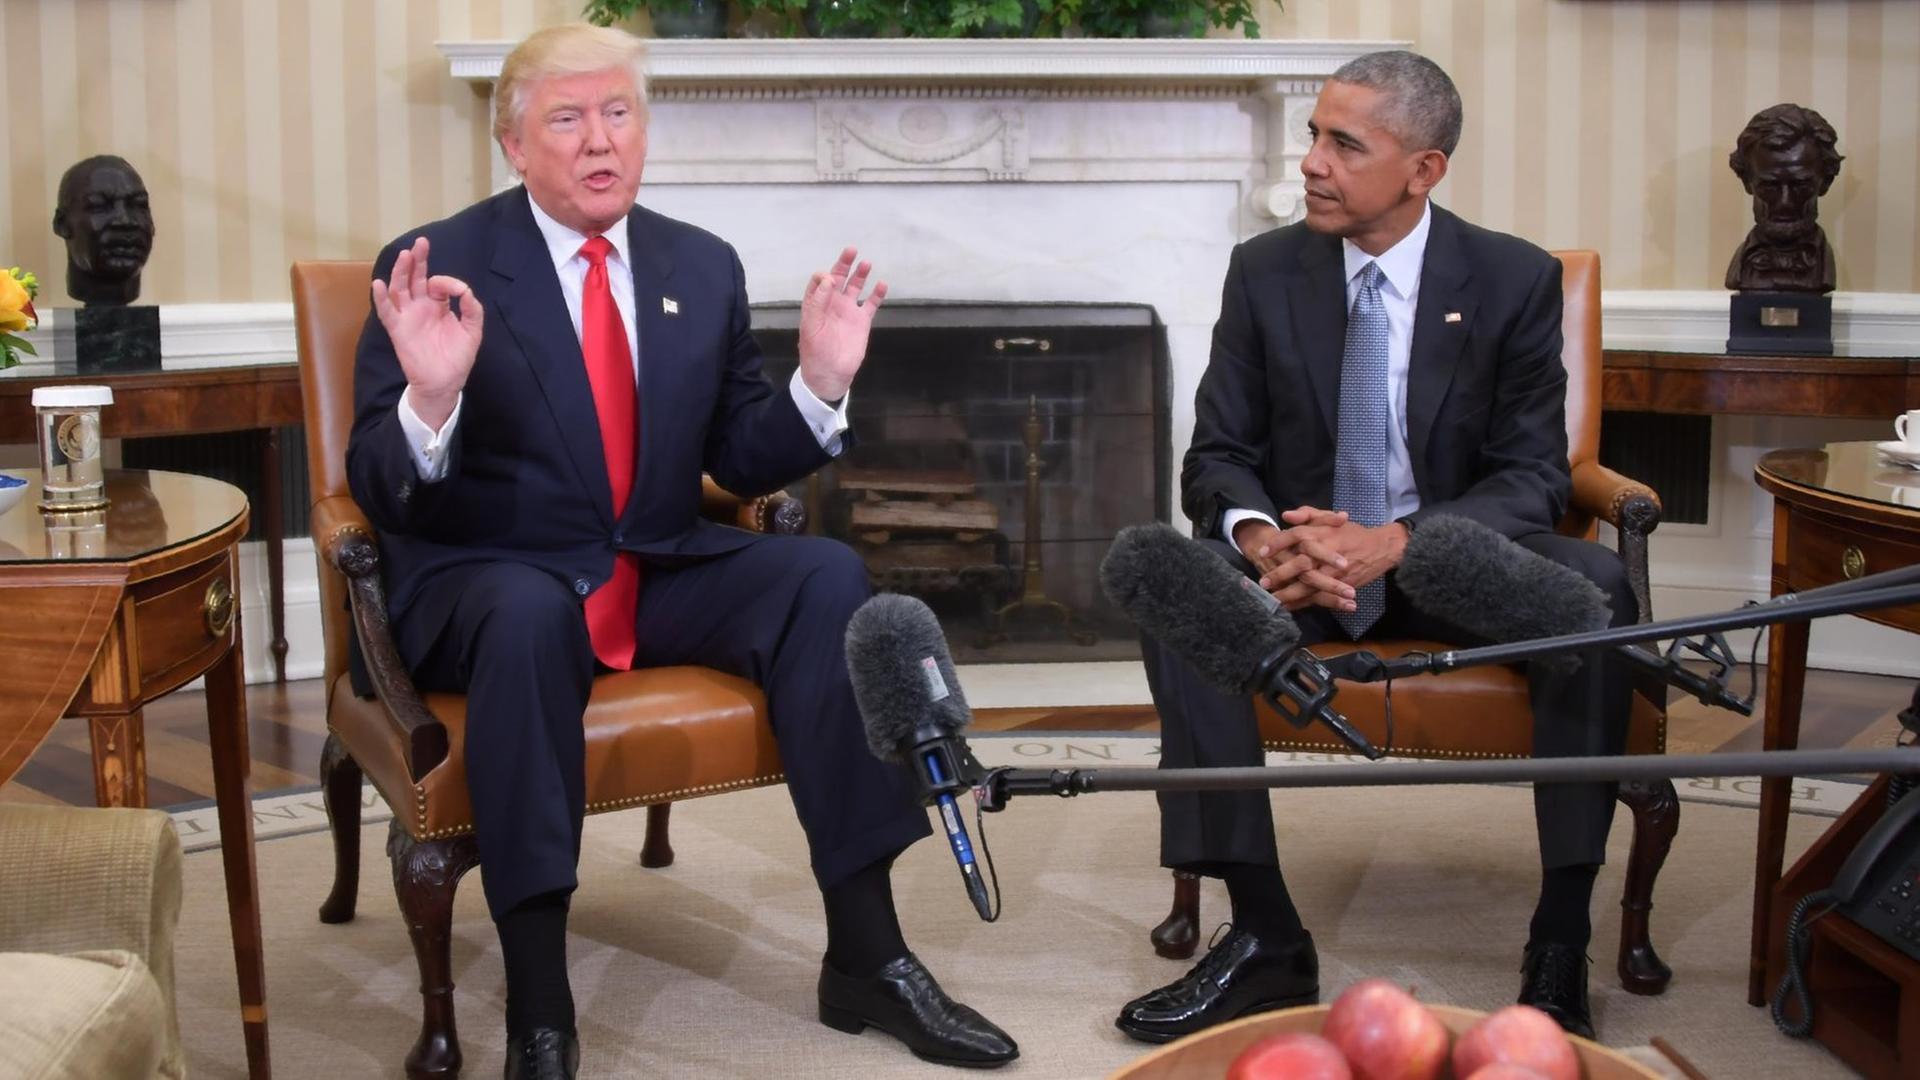 US-Präsident Barack Obama (r) und sein gewählter Nachfolger Donald Trump (l) sitzen nebeneinander auf Sesseln im Weißen Haus.